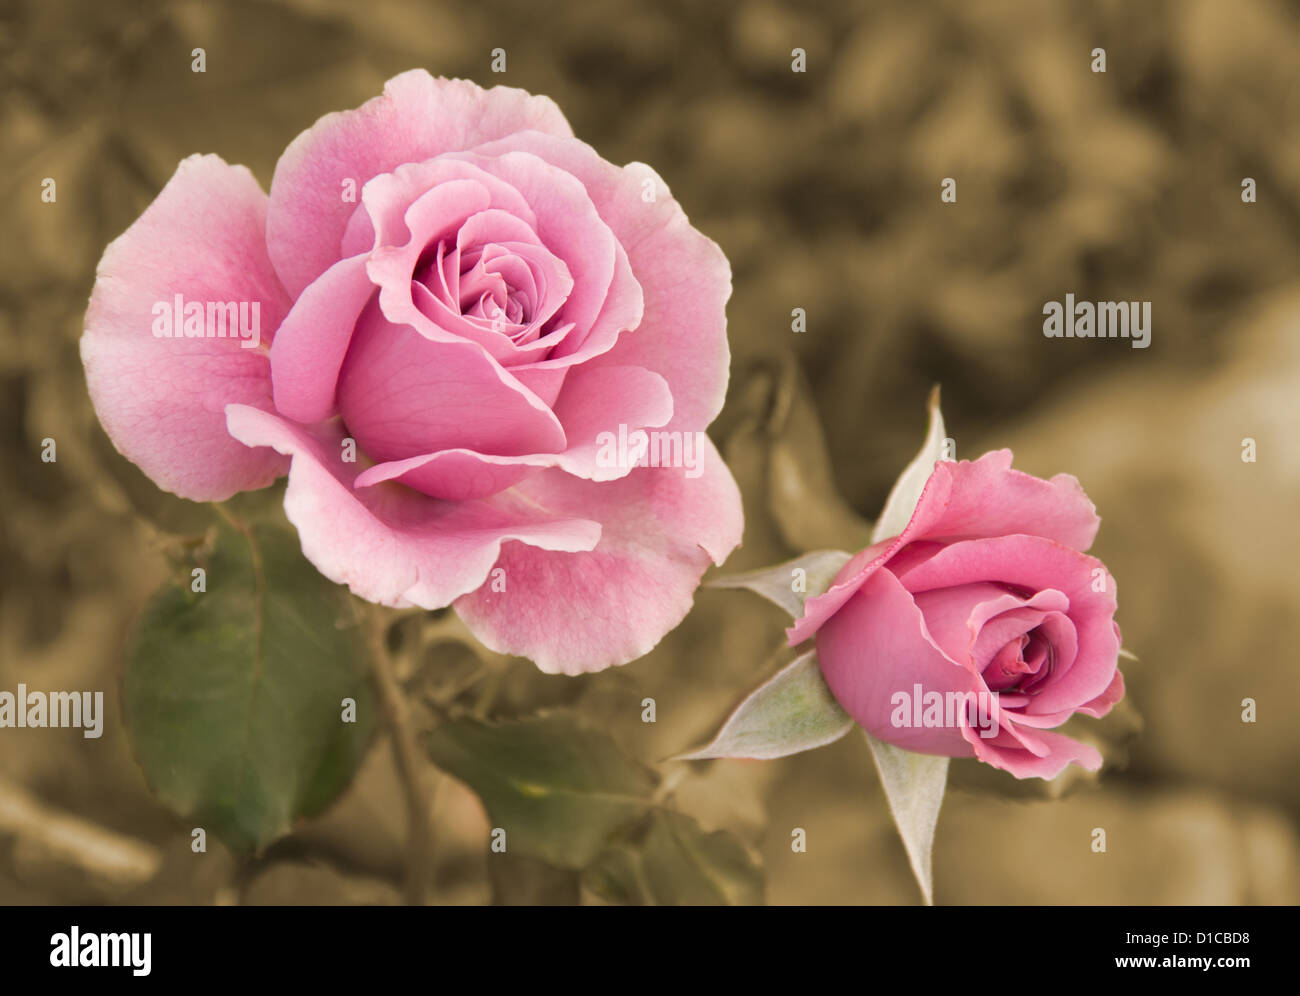 Rosa Rosen im Garten, Hintergrund in sanften Sepia-Farbton Stockfoto